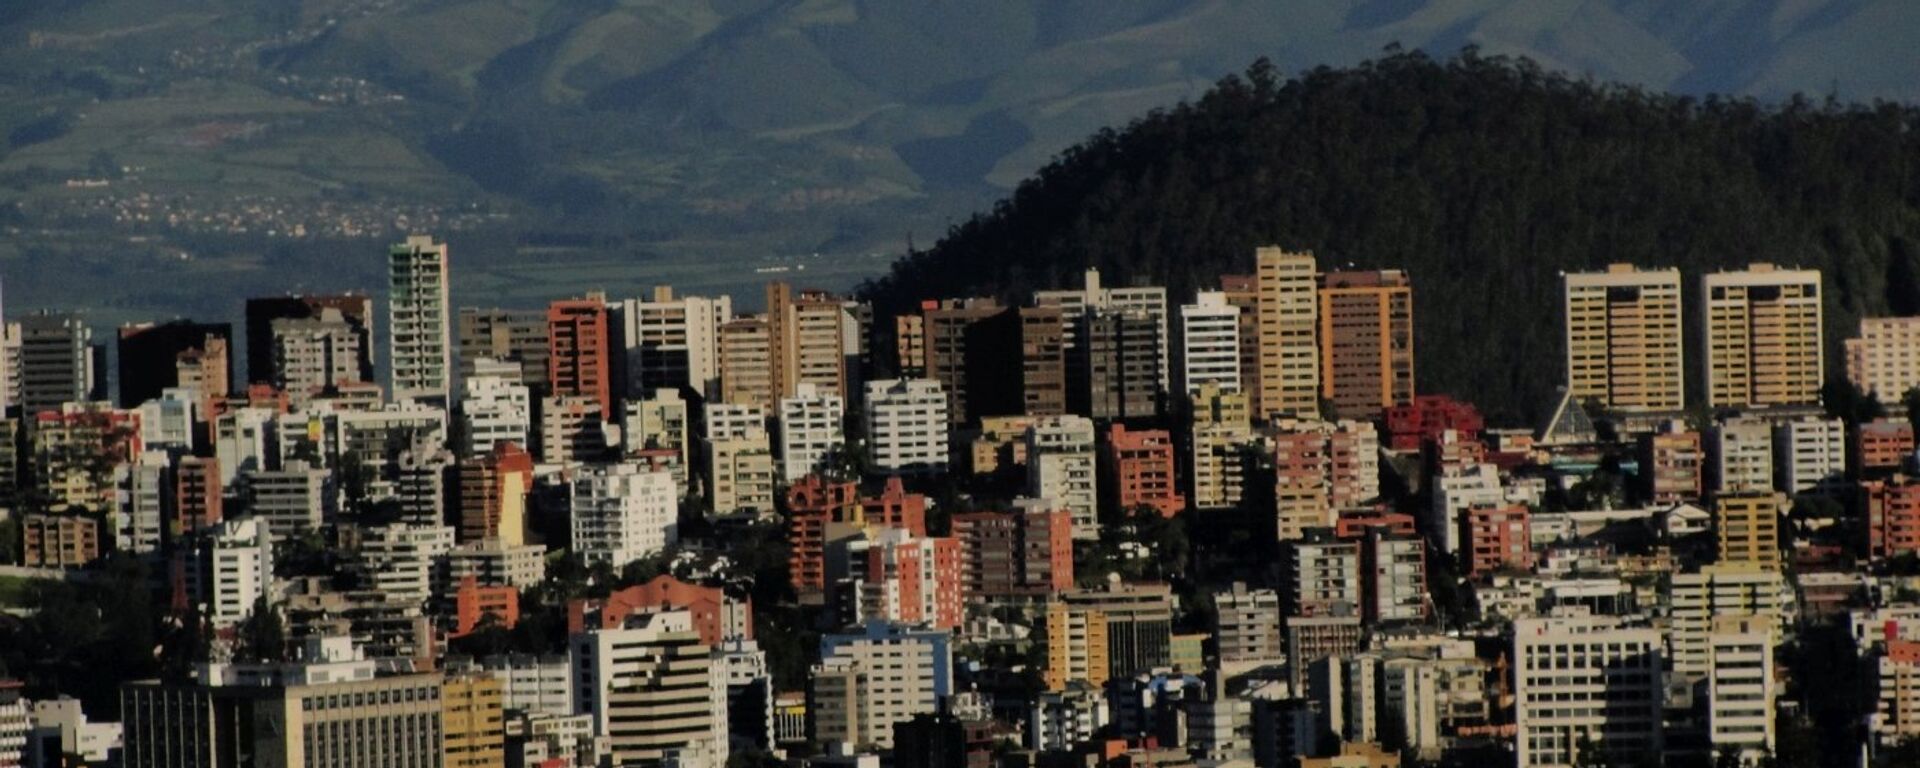 Quito, la capital de Ecuador - Sputnik Mundo, 1920, 19.03.2021